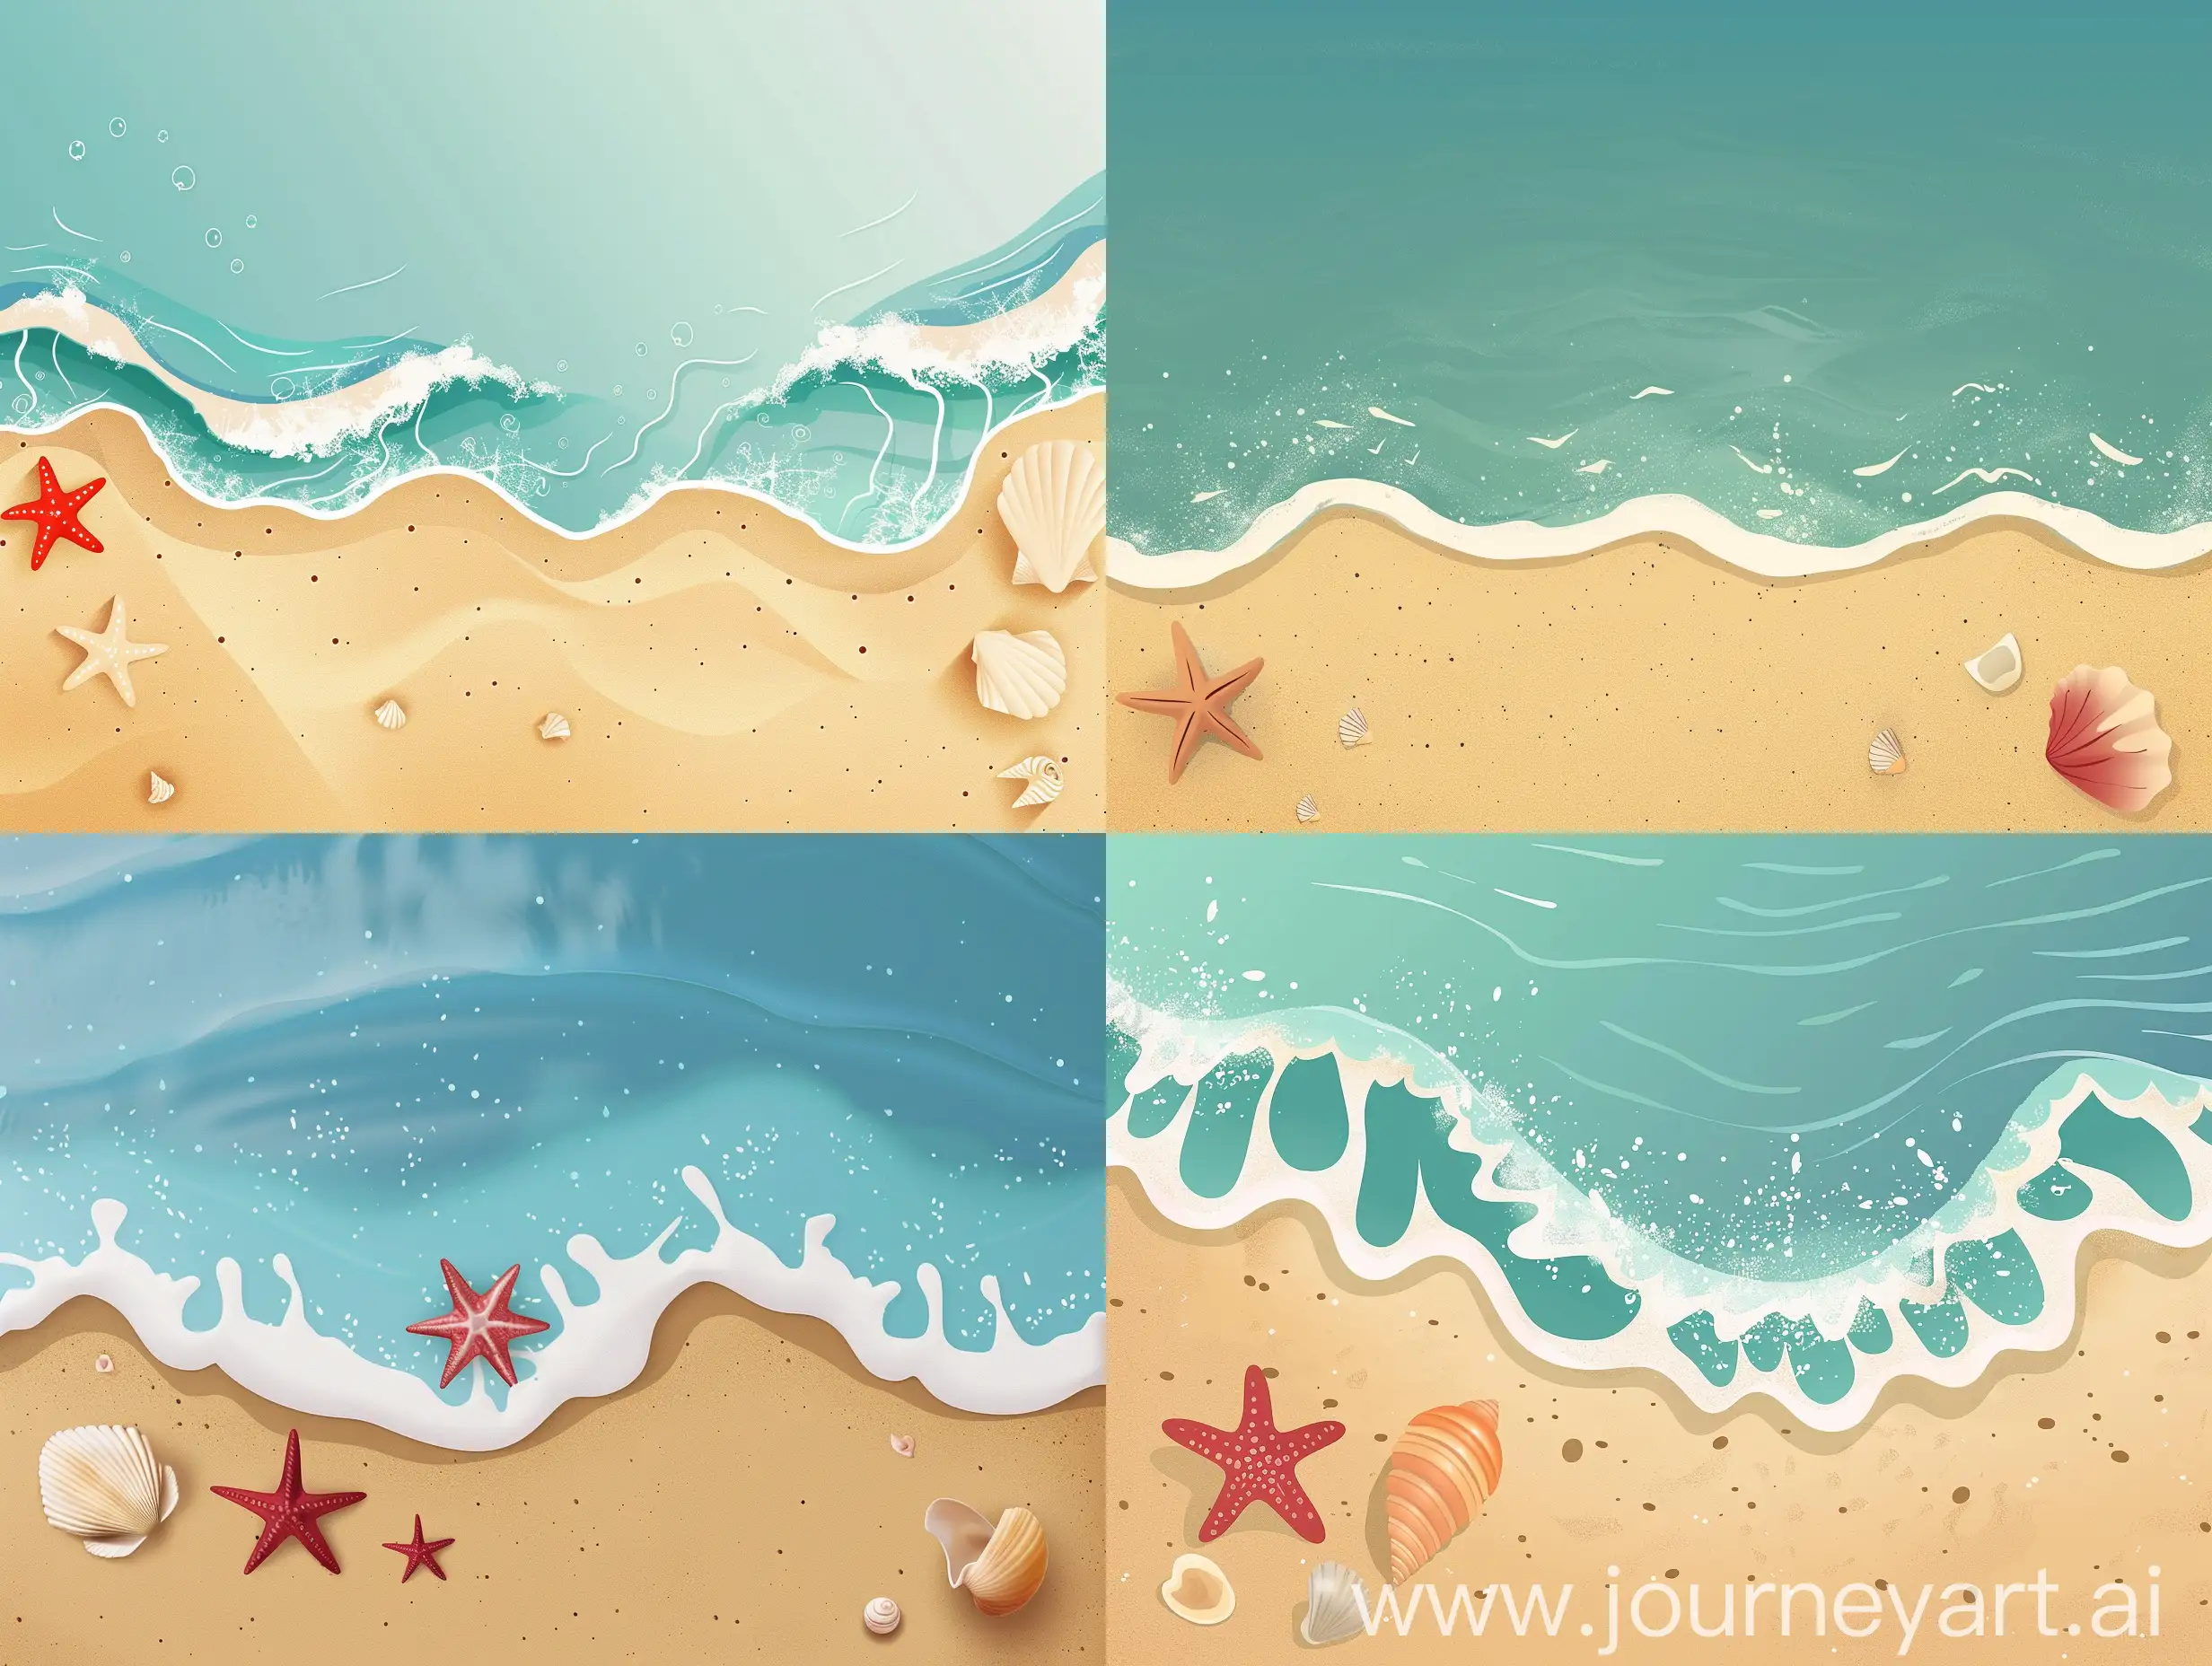 Minimalist-Ocean-Wave-and-Beach-Scene-with-Starfish-and-Seashells